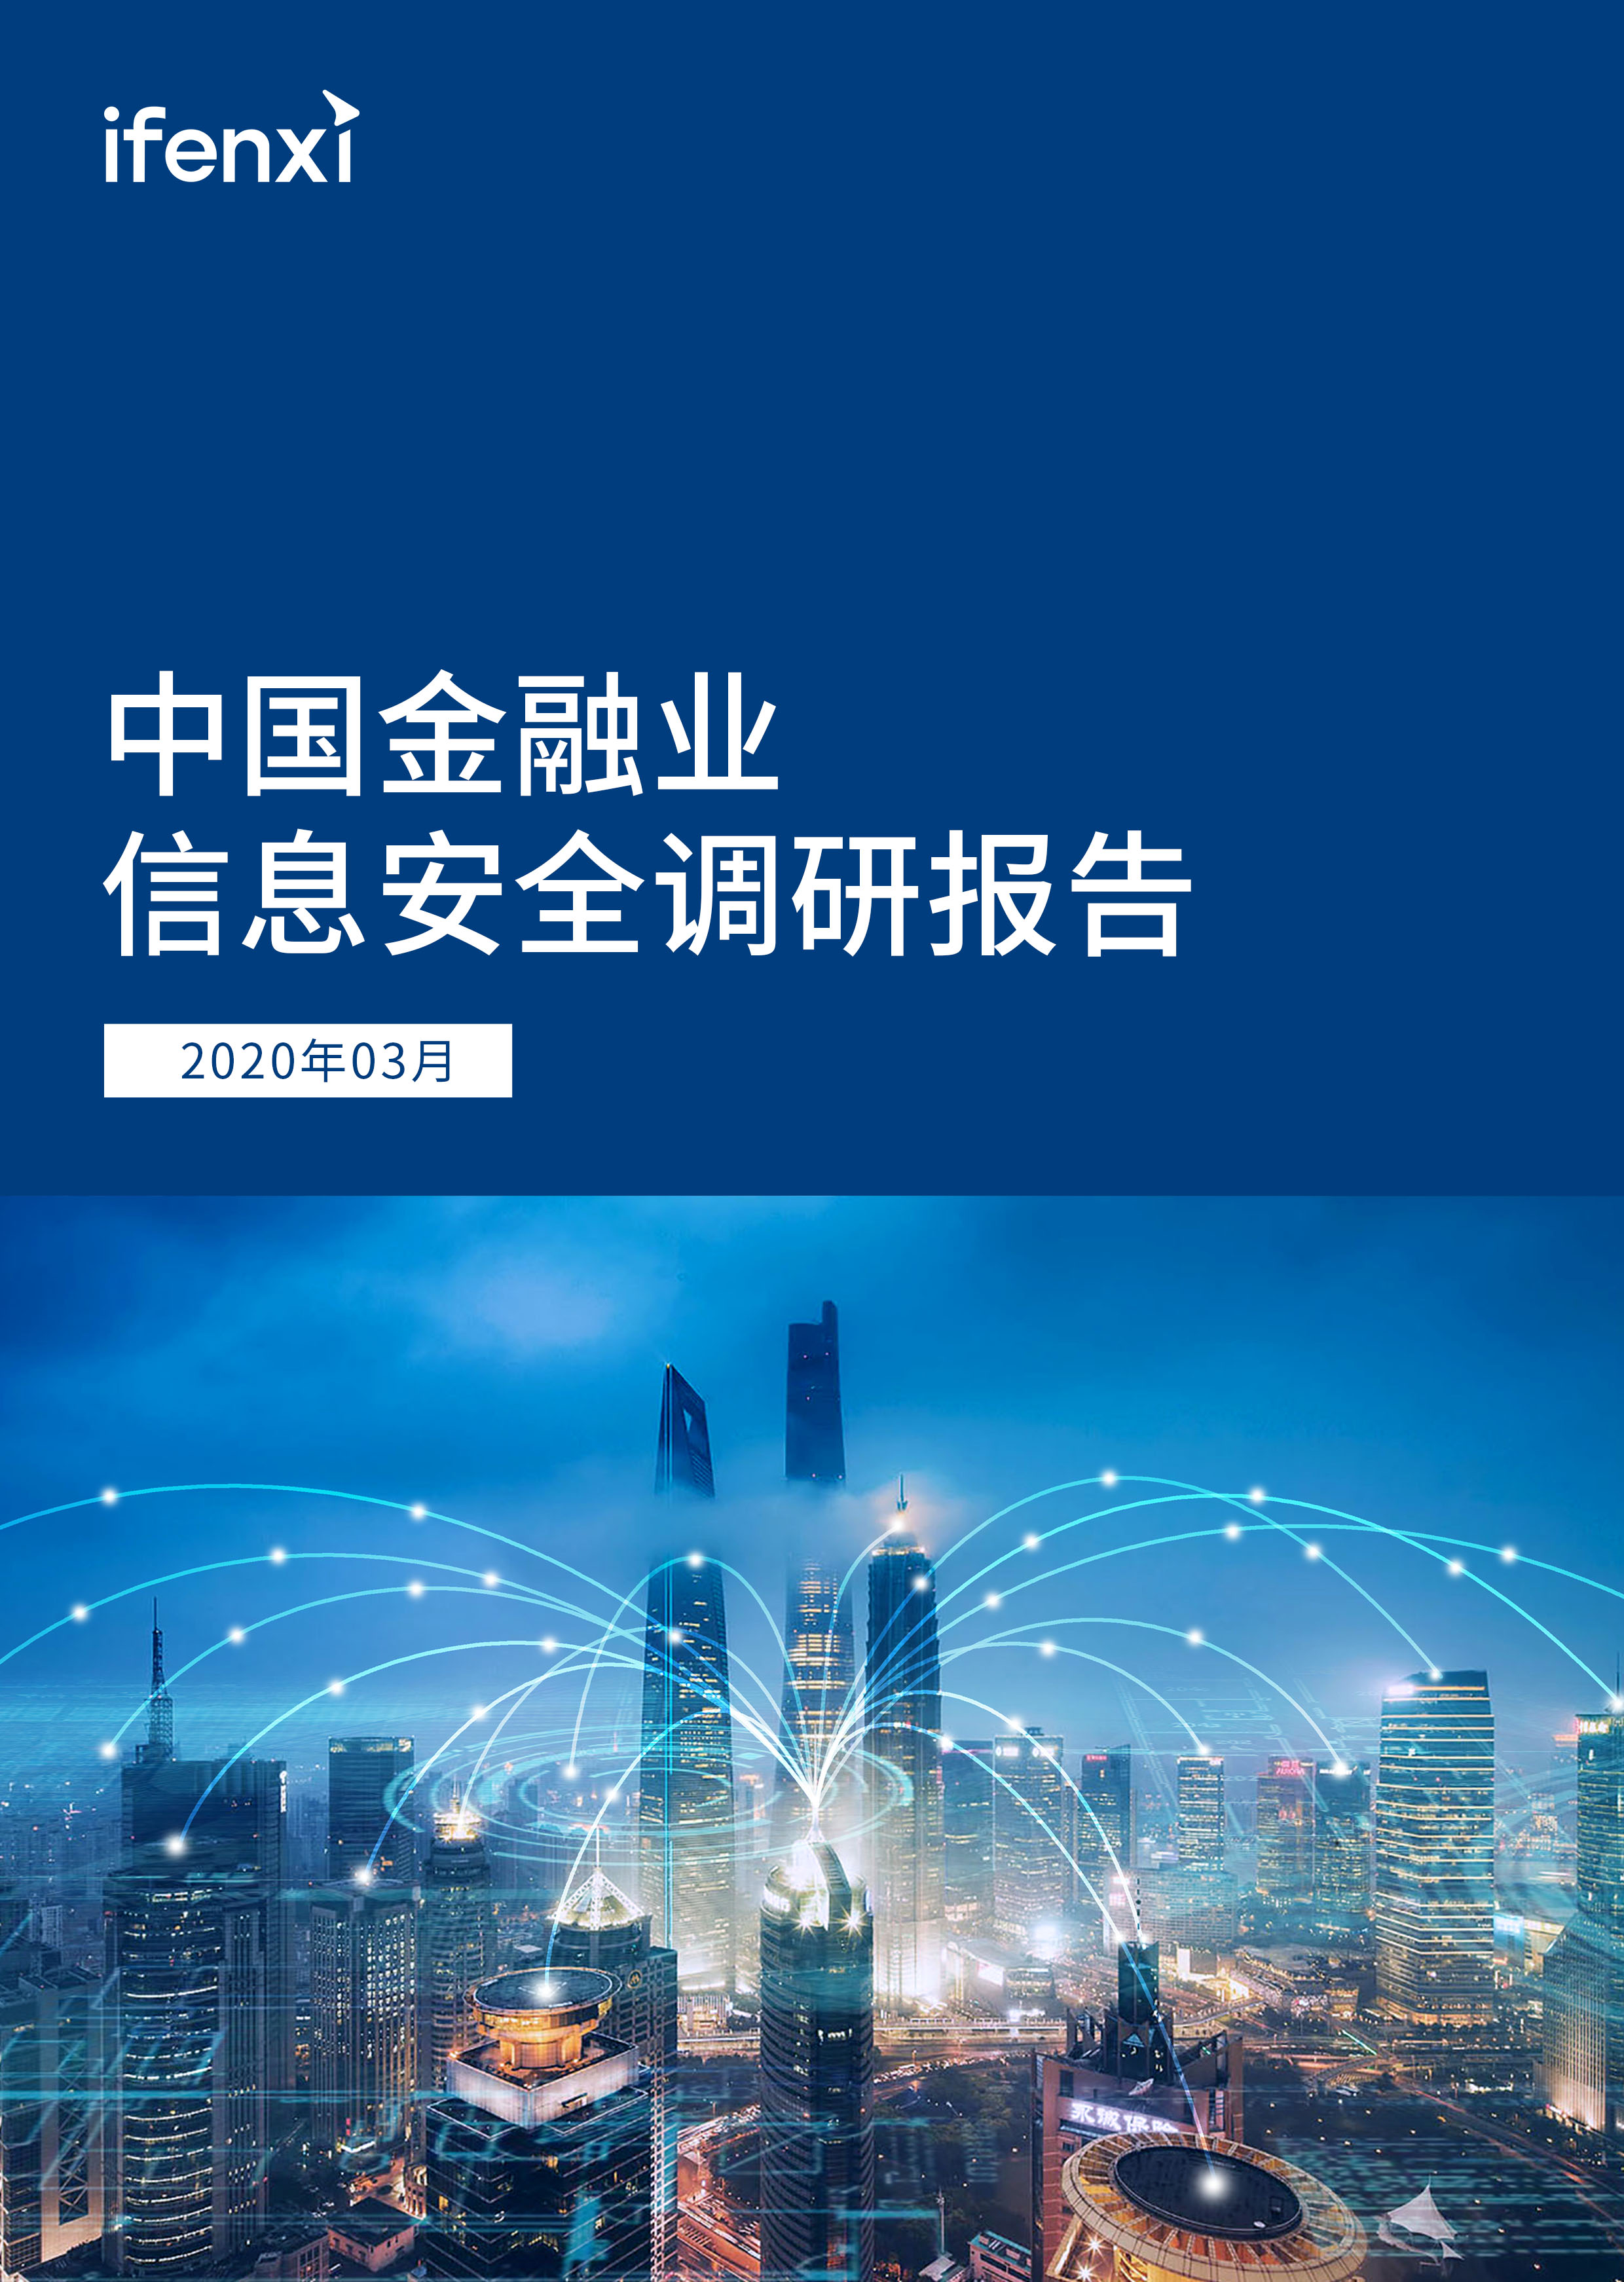 中国金融业信息安全调研报告 | 爱分析报告-爱分析ifenxi